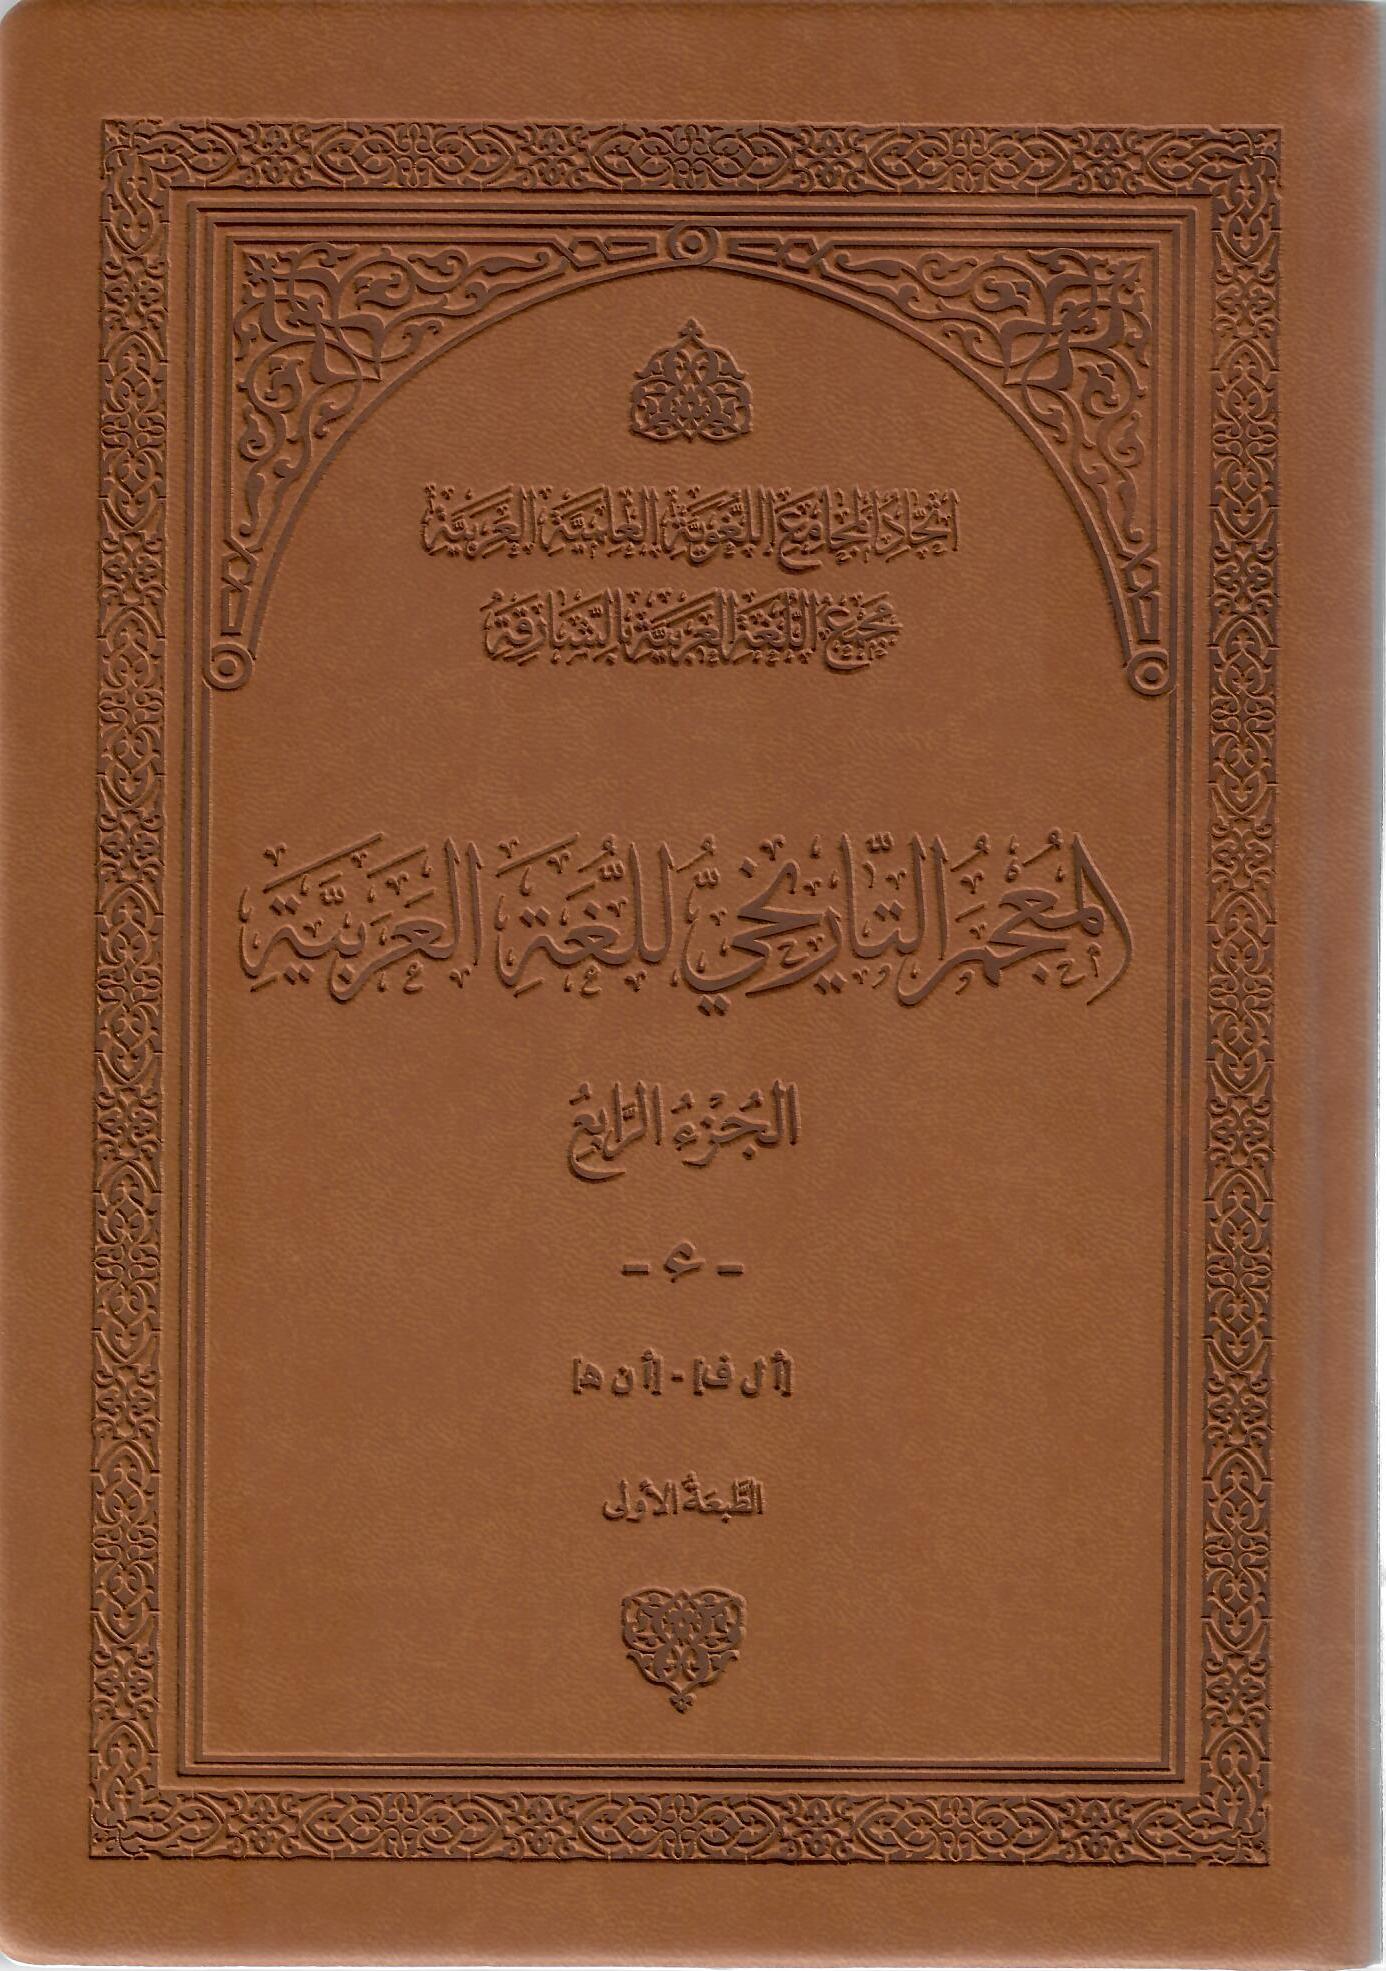 المعجم التاريخي للغة العربية الجزء الرابع